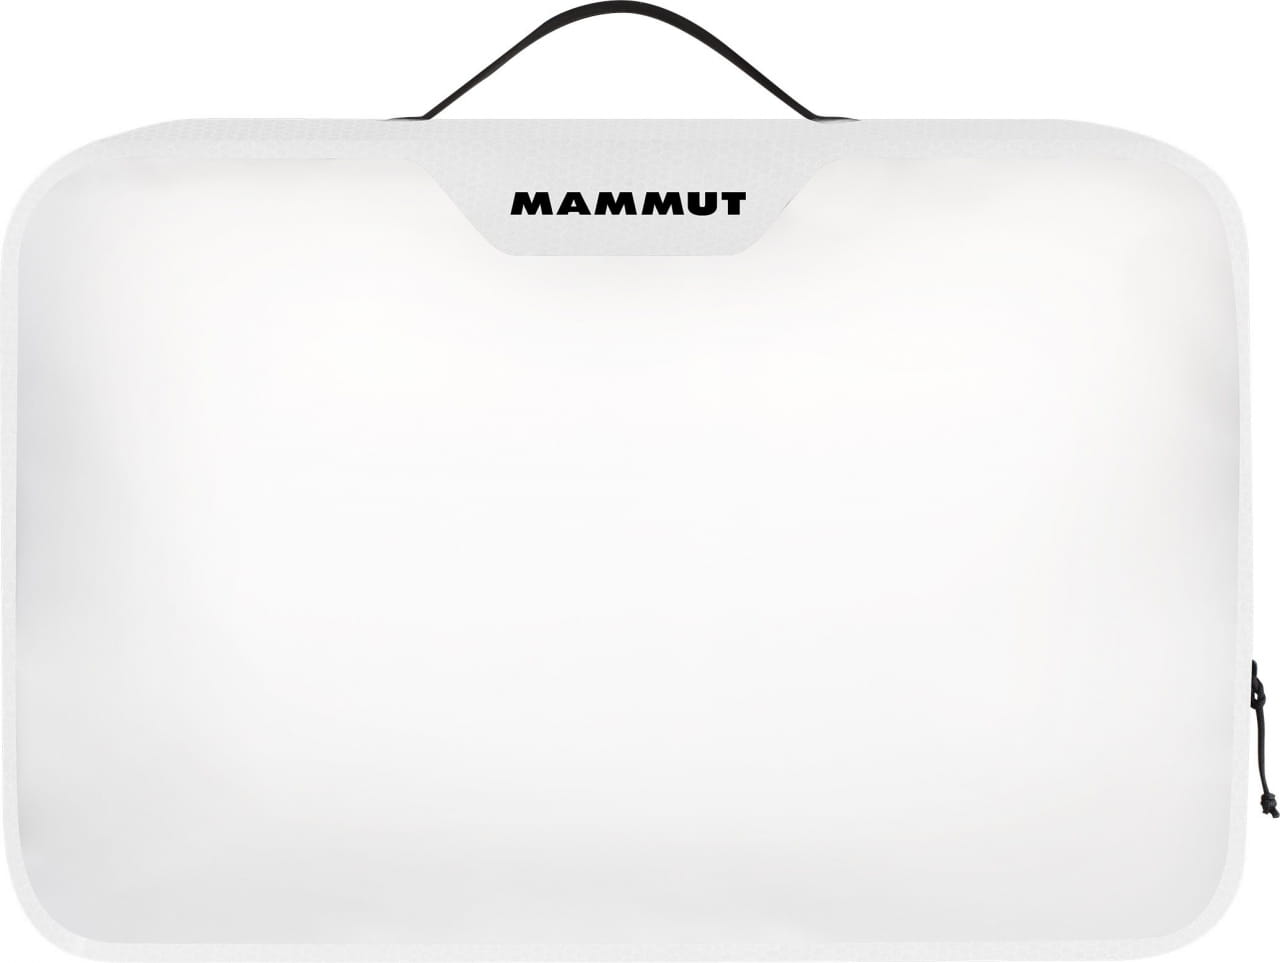 Mallette de voyage Mammut Smart Case Light, S